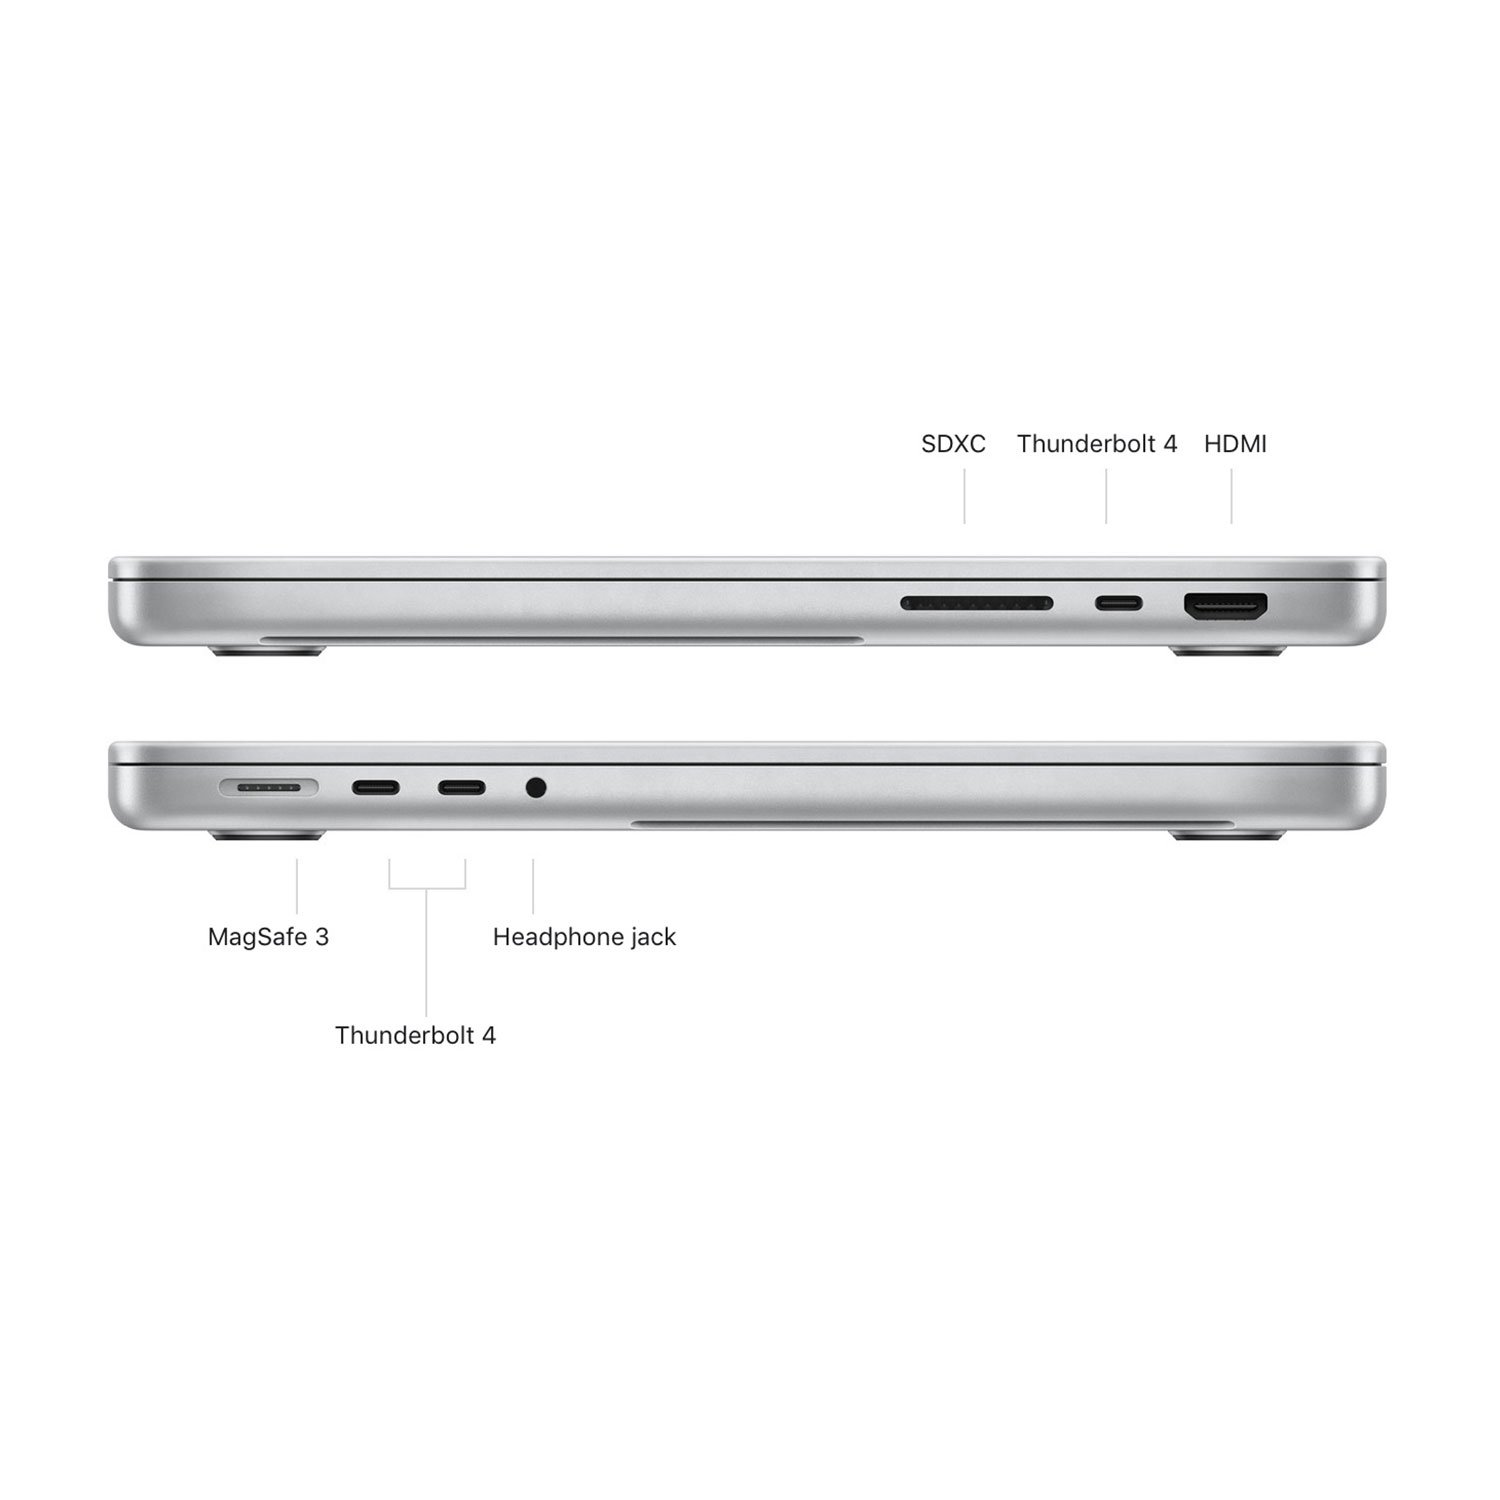 مک بوک پرو 16.2 اینچ  رم 16 حافظه 512 گیگ مدل Macbook Pro MK183 M1 PRO 2021